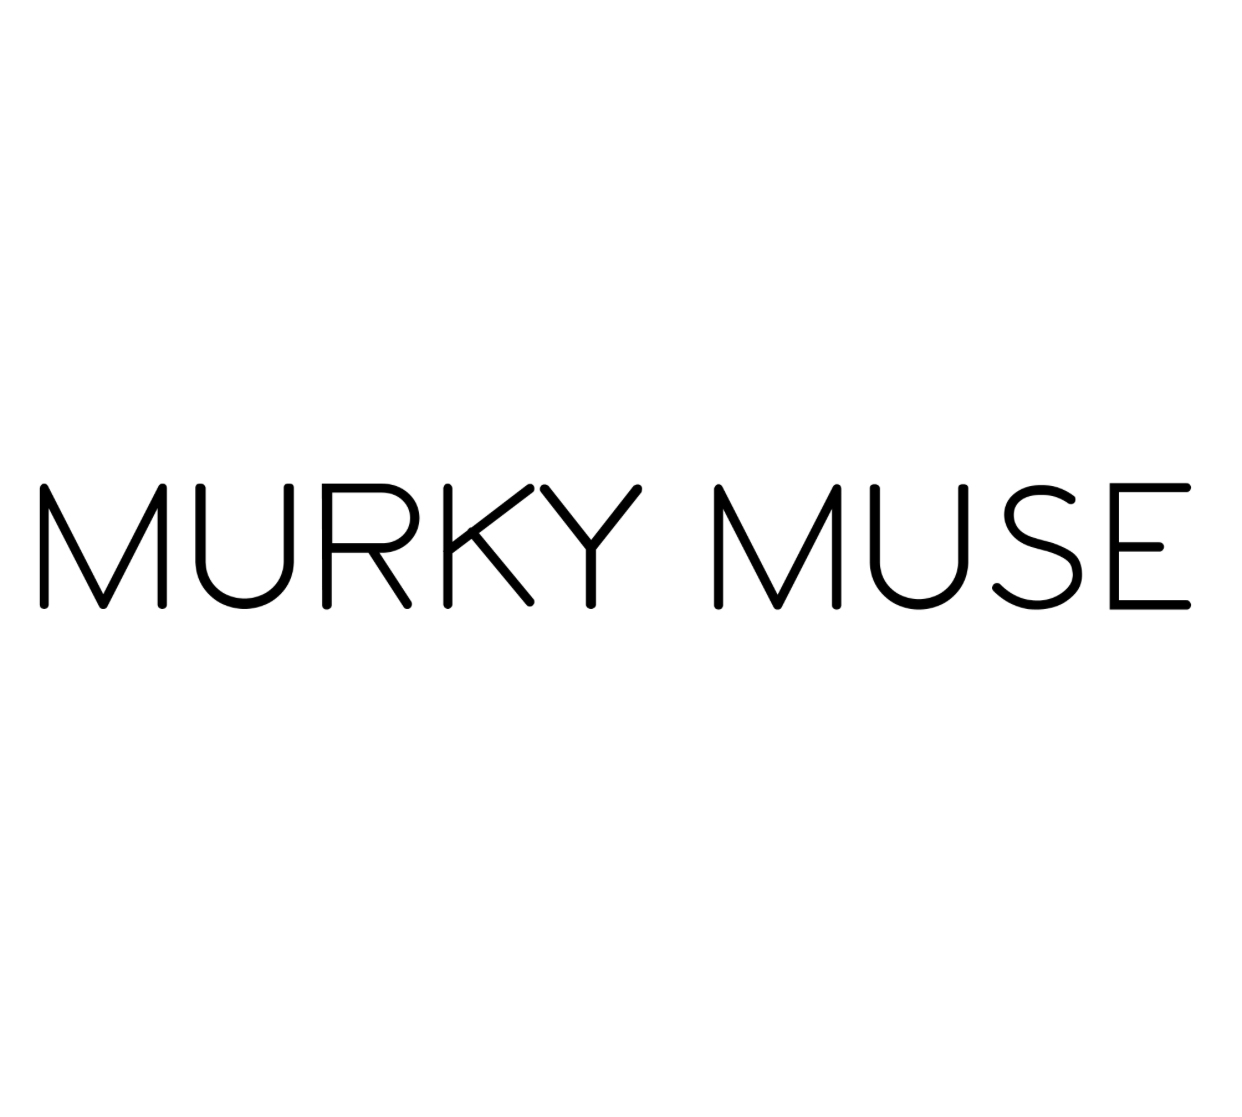 Murky Muse